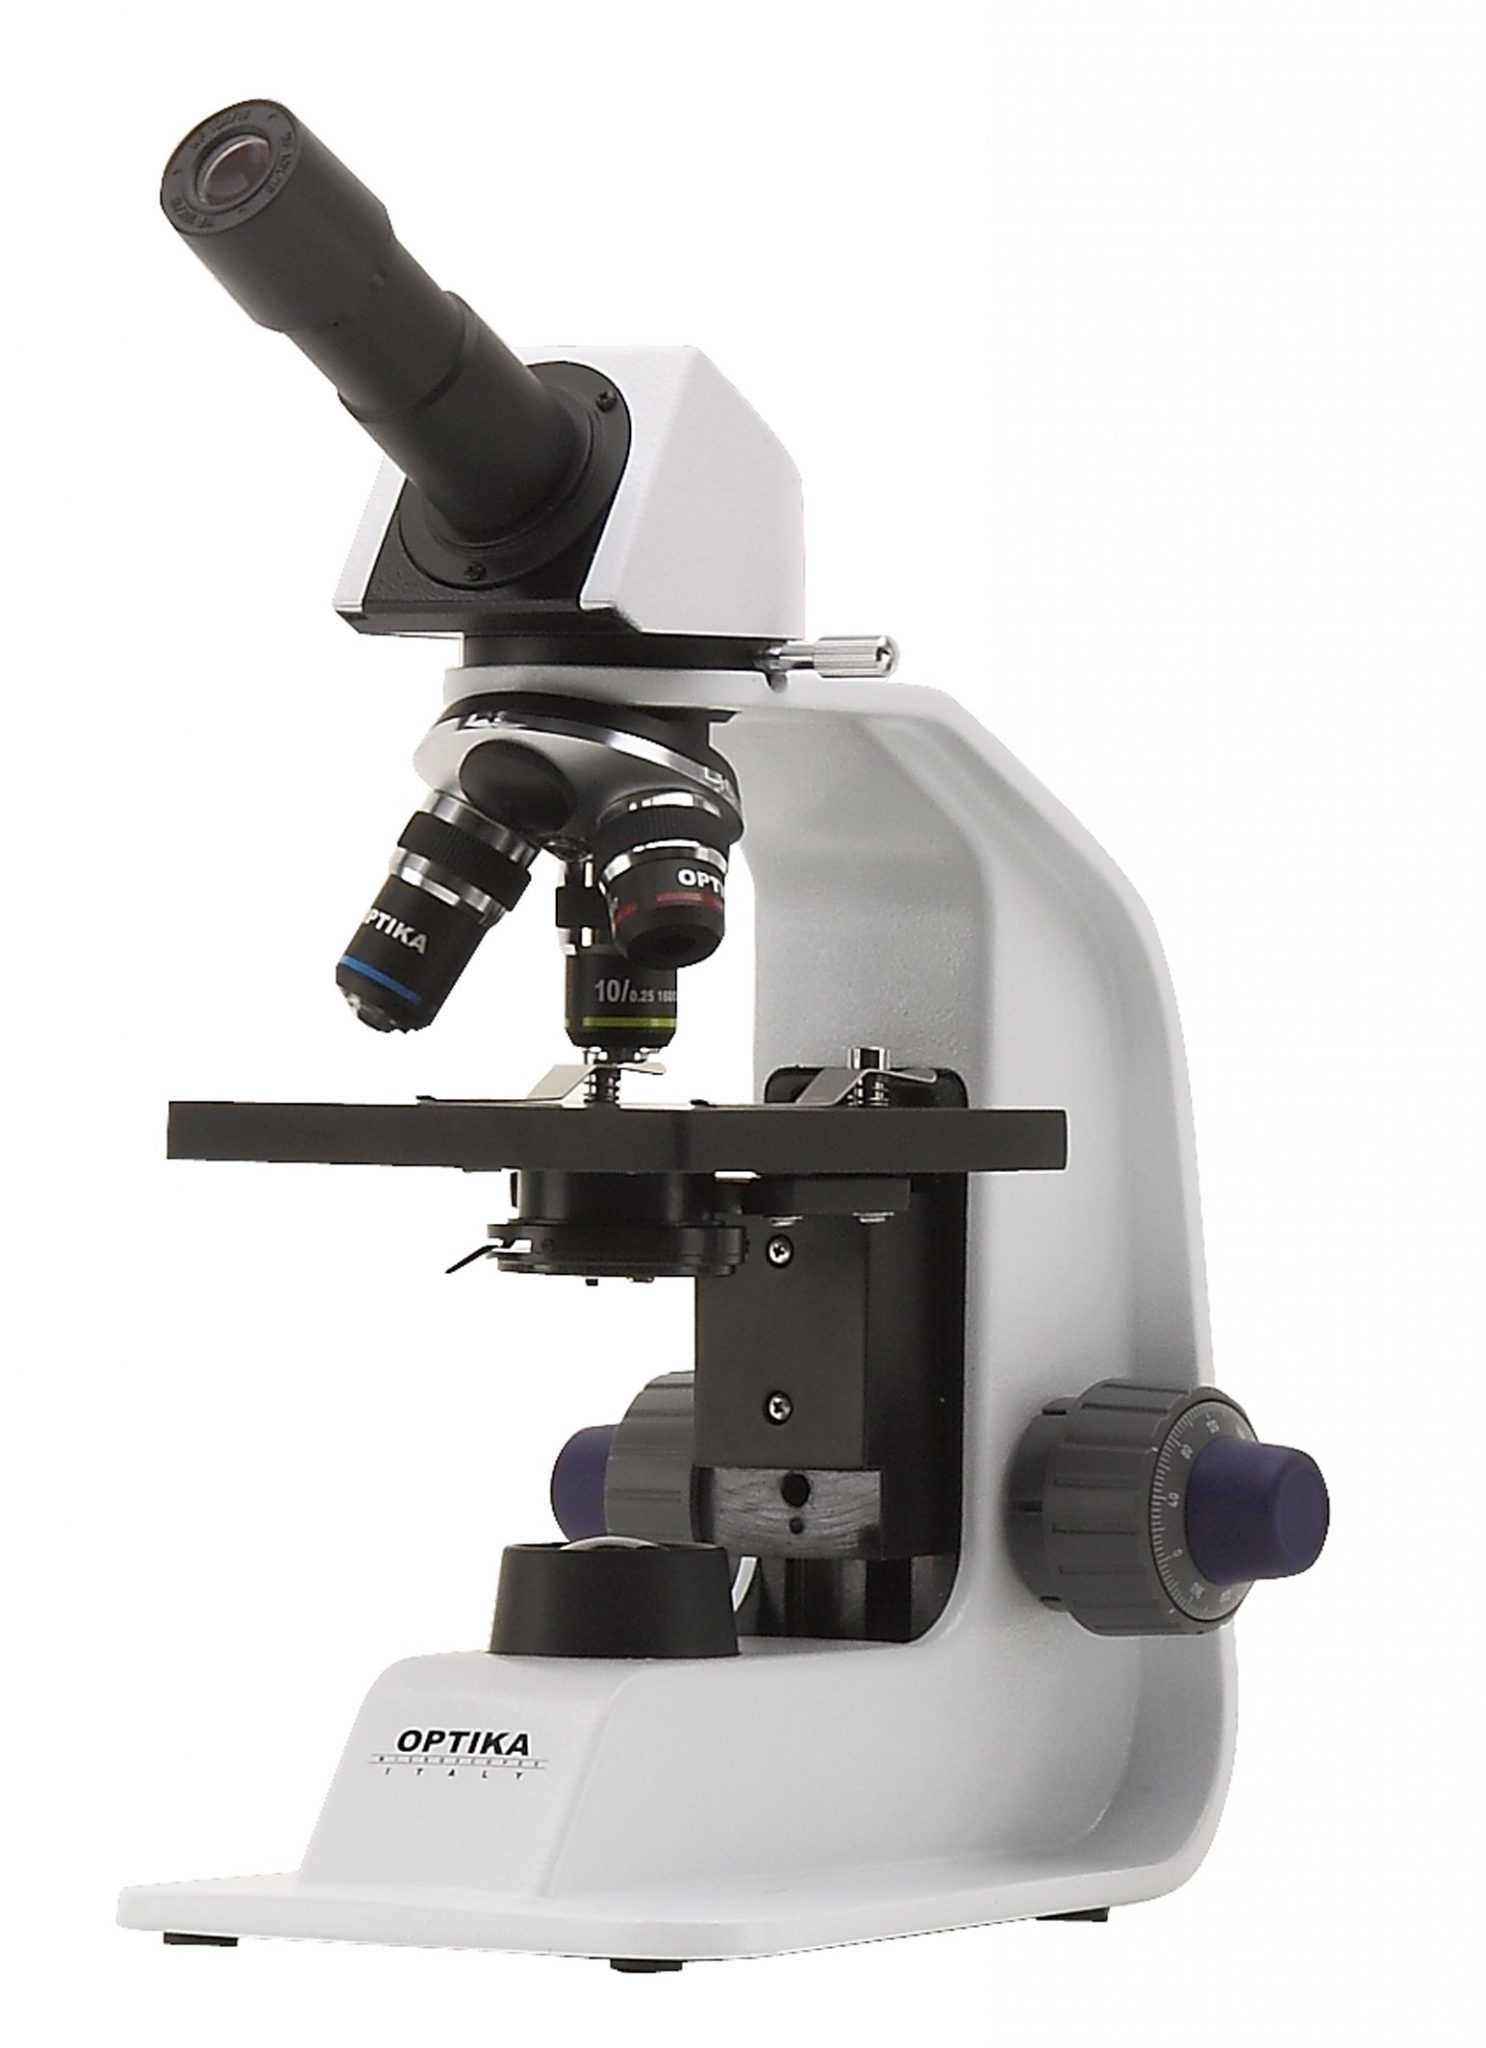 B-151R Microscopio monocular 400x con baterías recargables. (Producto hasta fin de existencias)